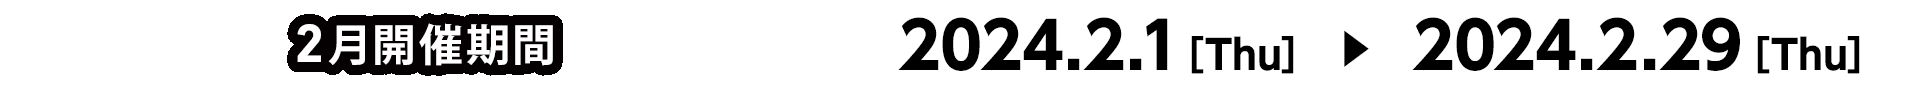 2月開催期間 2024.2.1[Thu] ～ 2024.2.29[Thu]